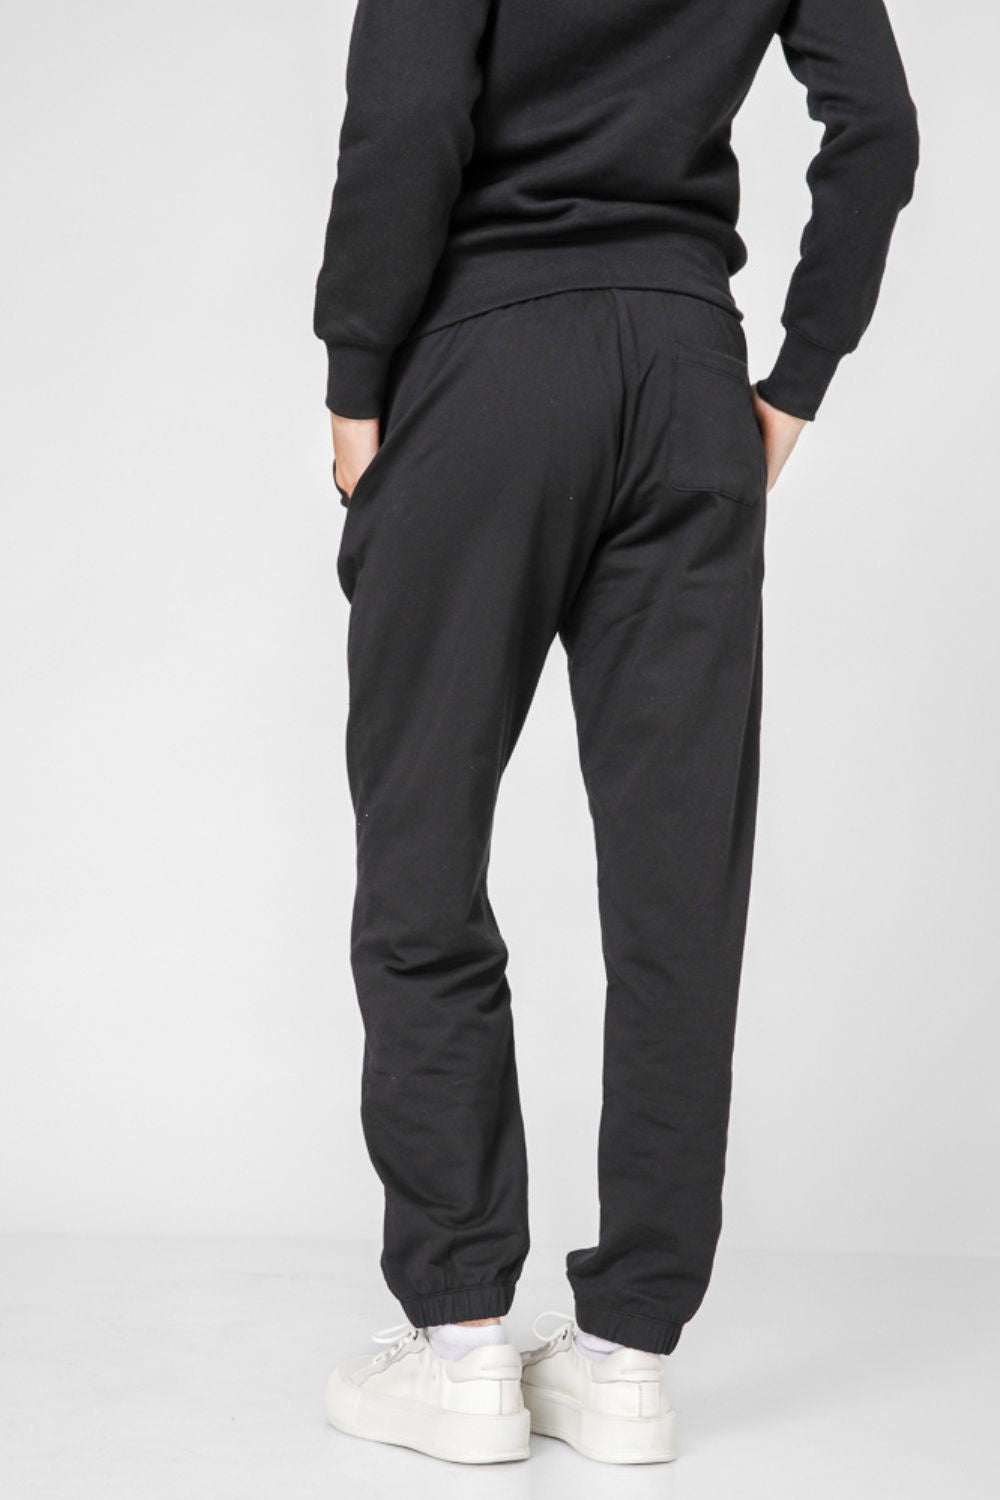 מכנסיים ארוכים לנשים LEGACY בצבע שחור